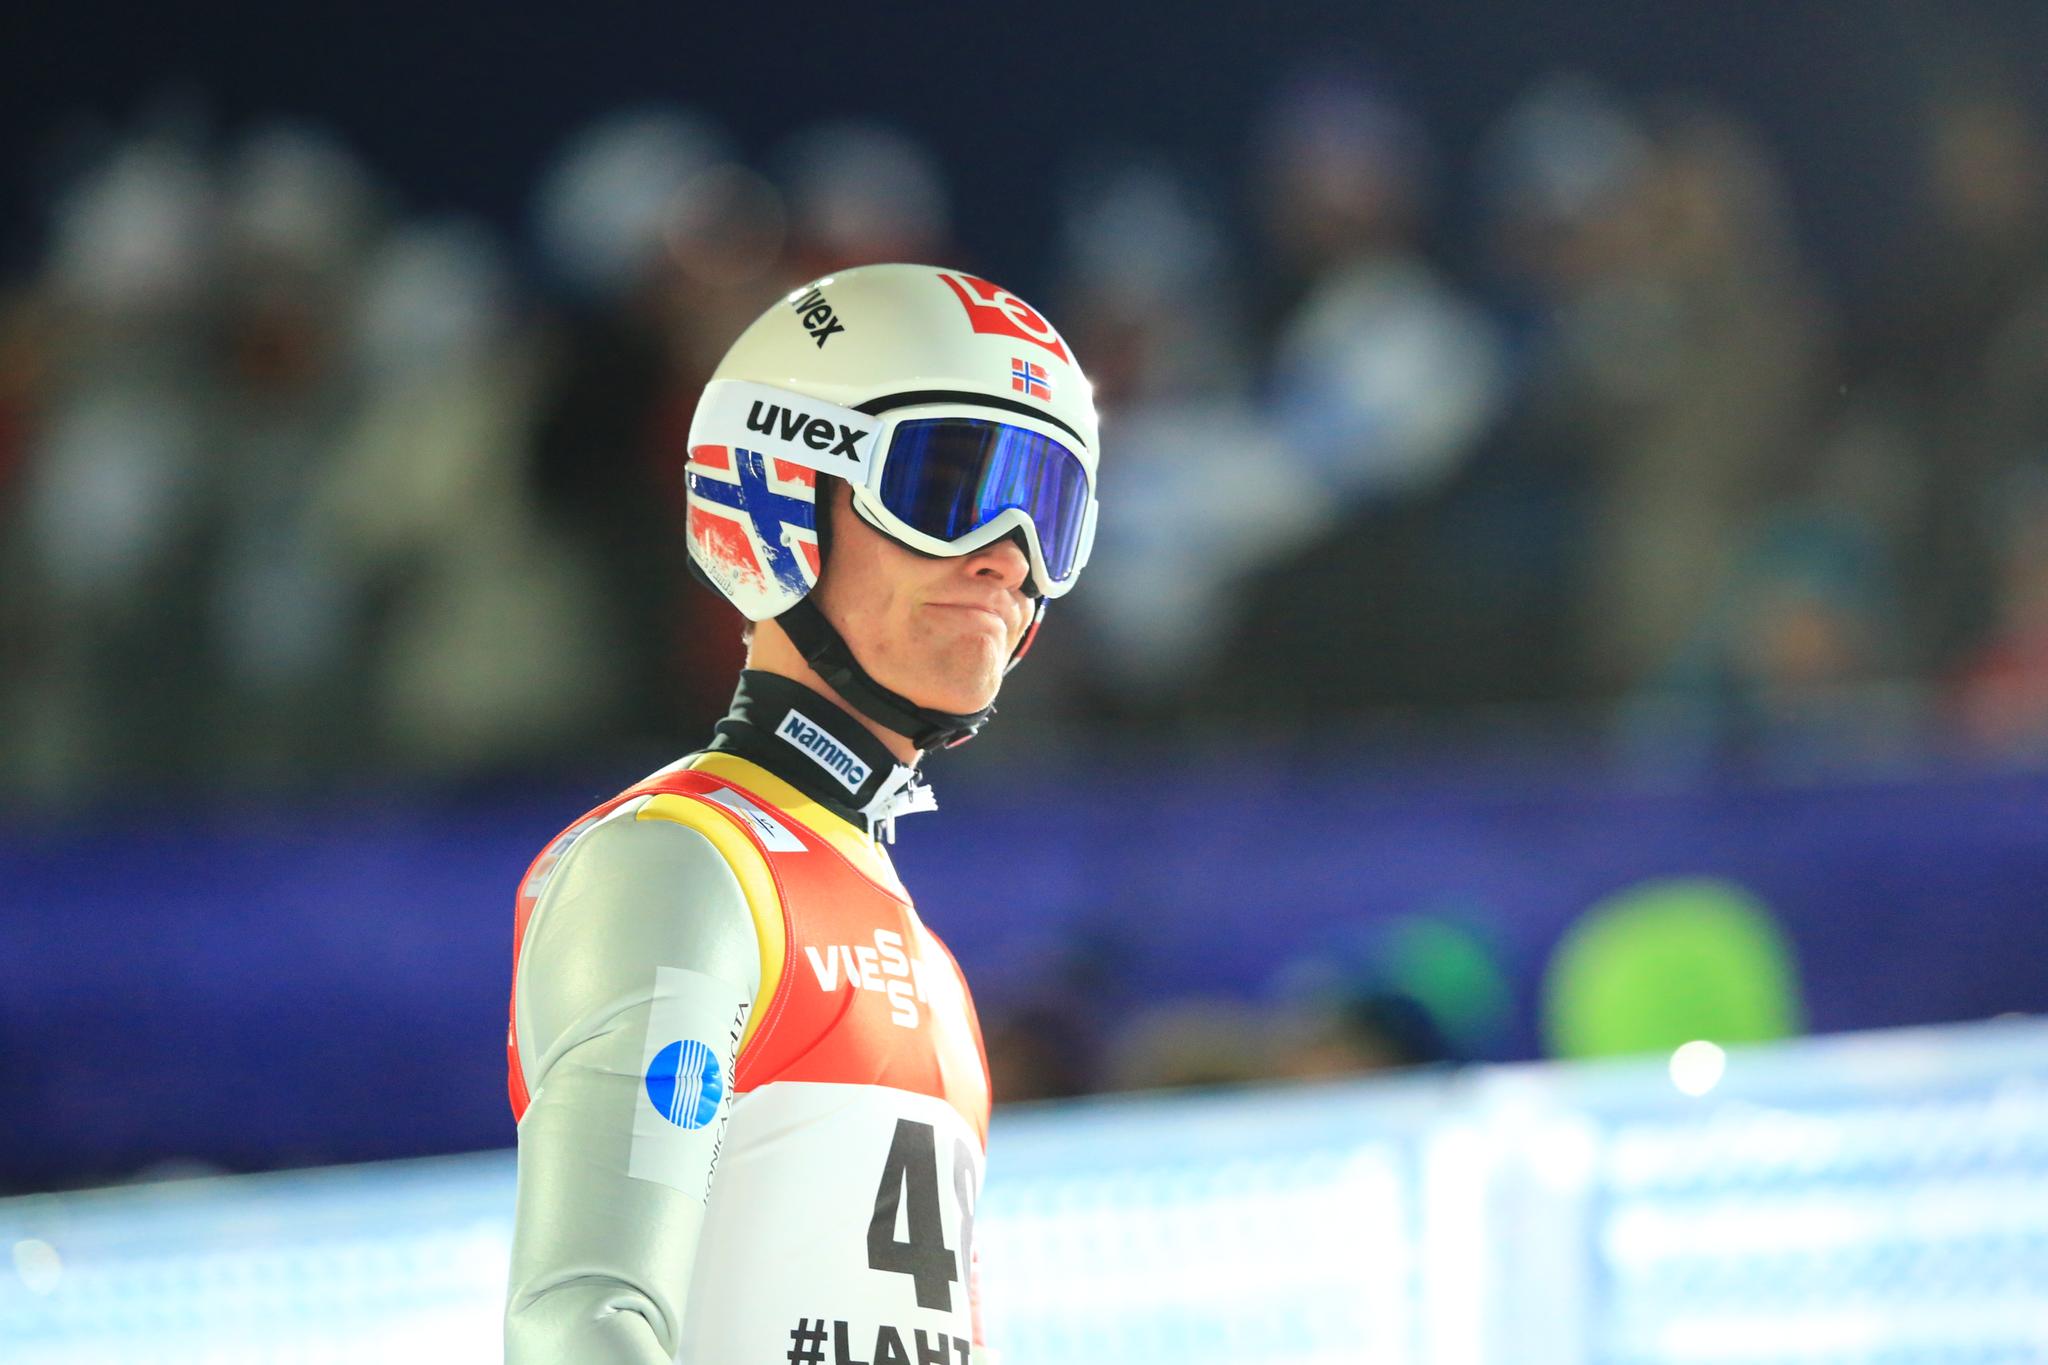 Daniel-André Tande fikk en tung åpning på VM i Lahti. I dag kan han slå tilbake.